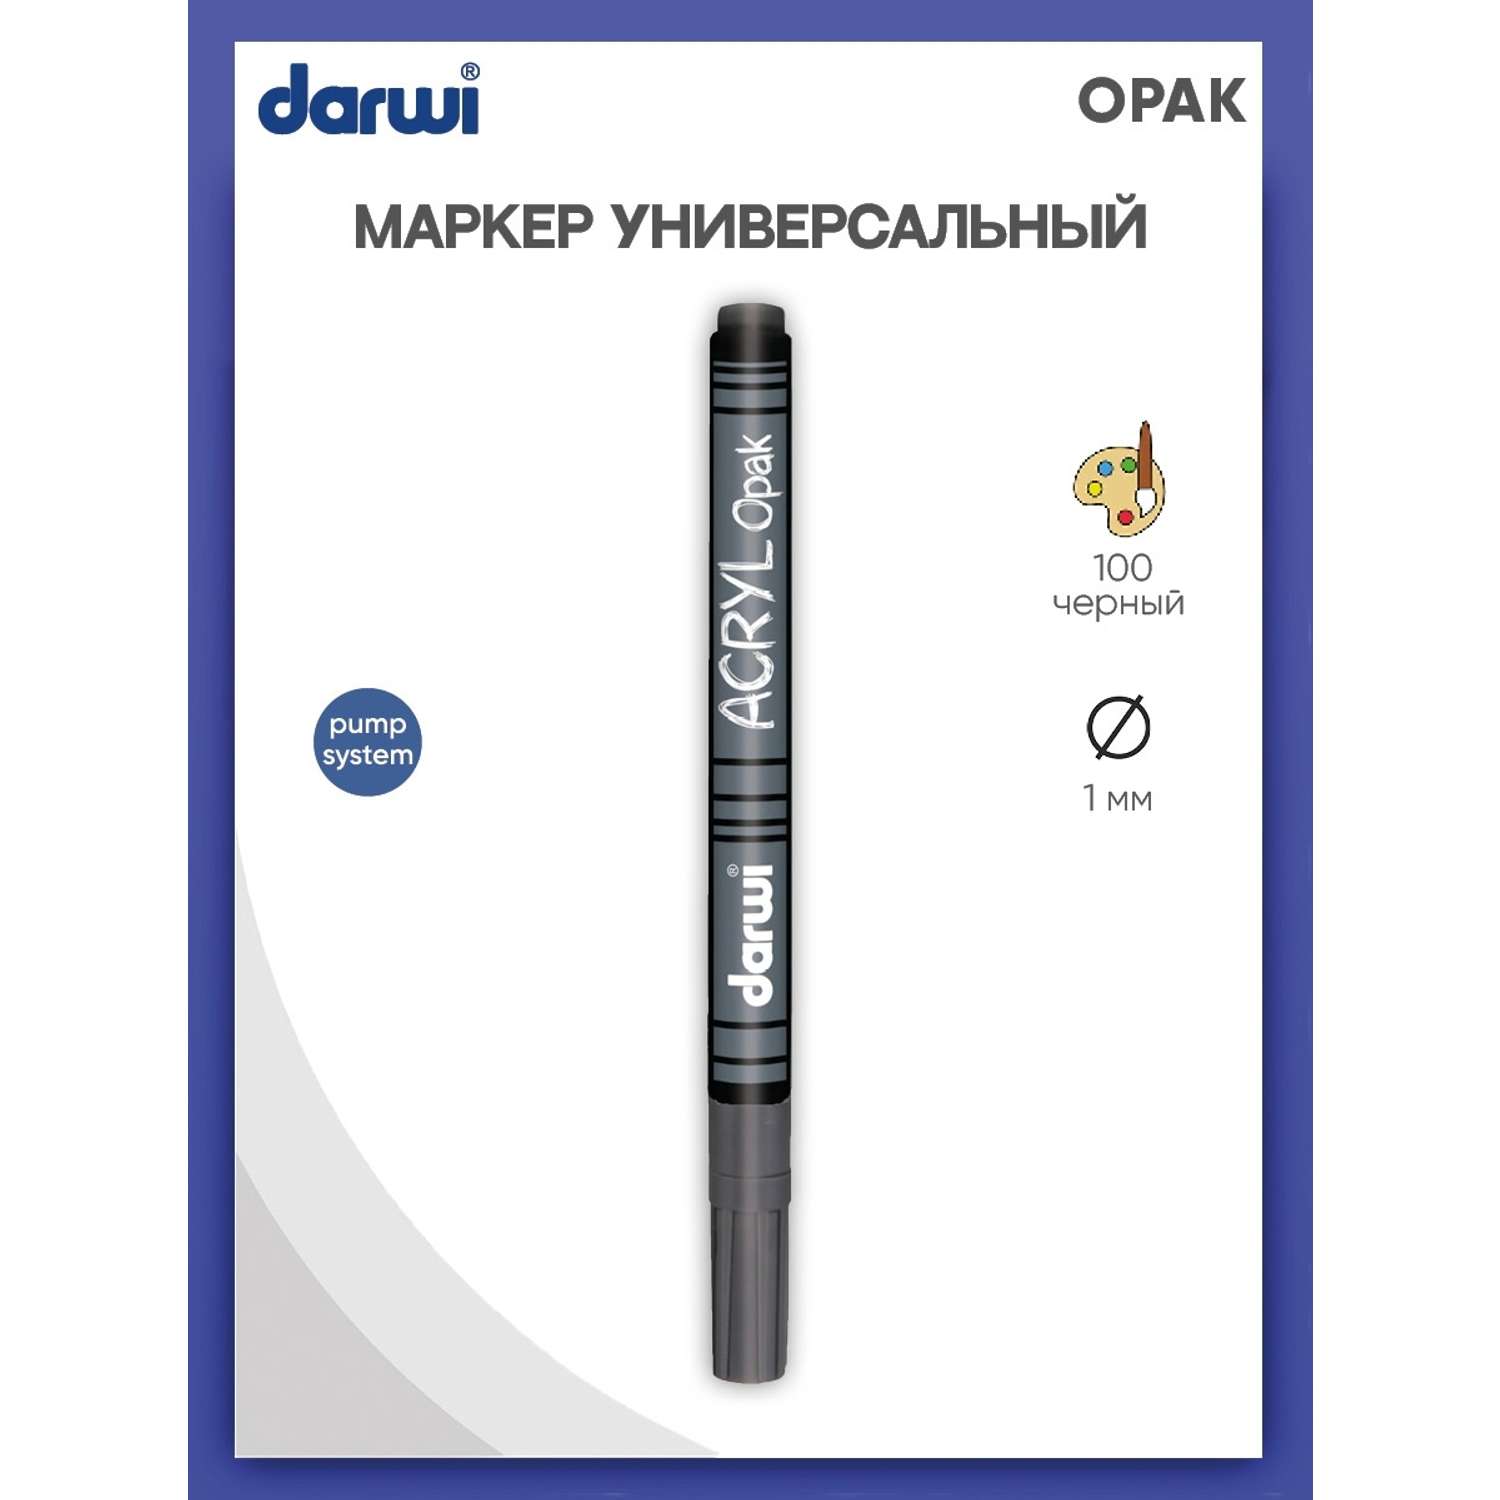 Маркер Darwi акриловый OPAK DA0220014 1 мм укрывистый 100 черный - фото 1